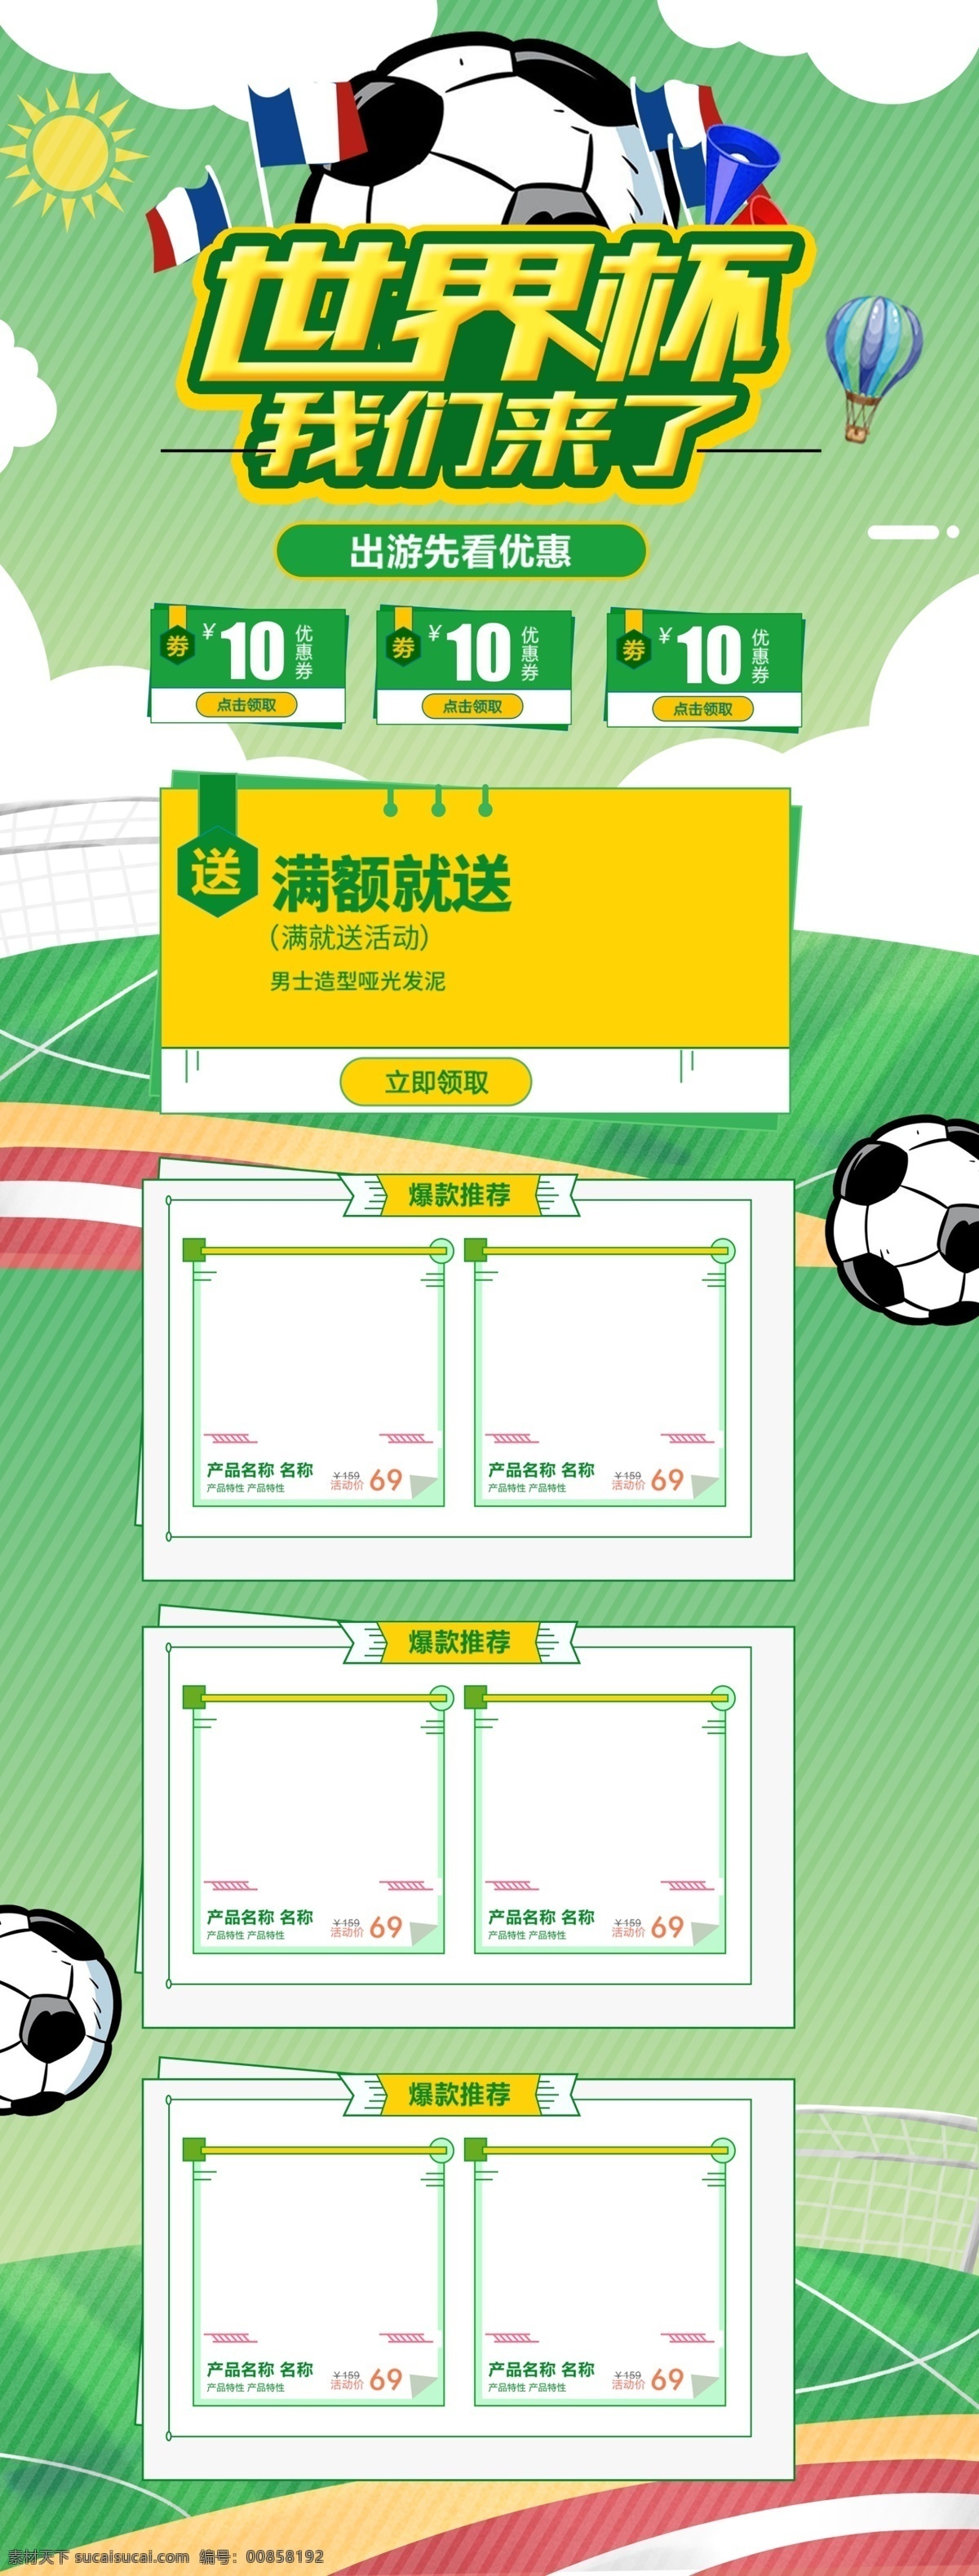 绿色 清新 2018 世界杯 足球 运动 淘宝 首页 优惠券 俄罗斯世界杯 世界杯首页 体育用品